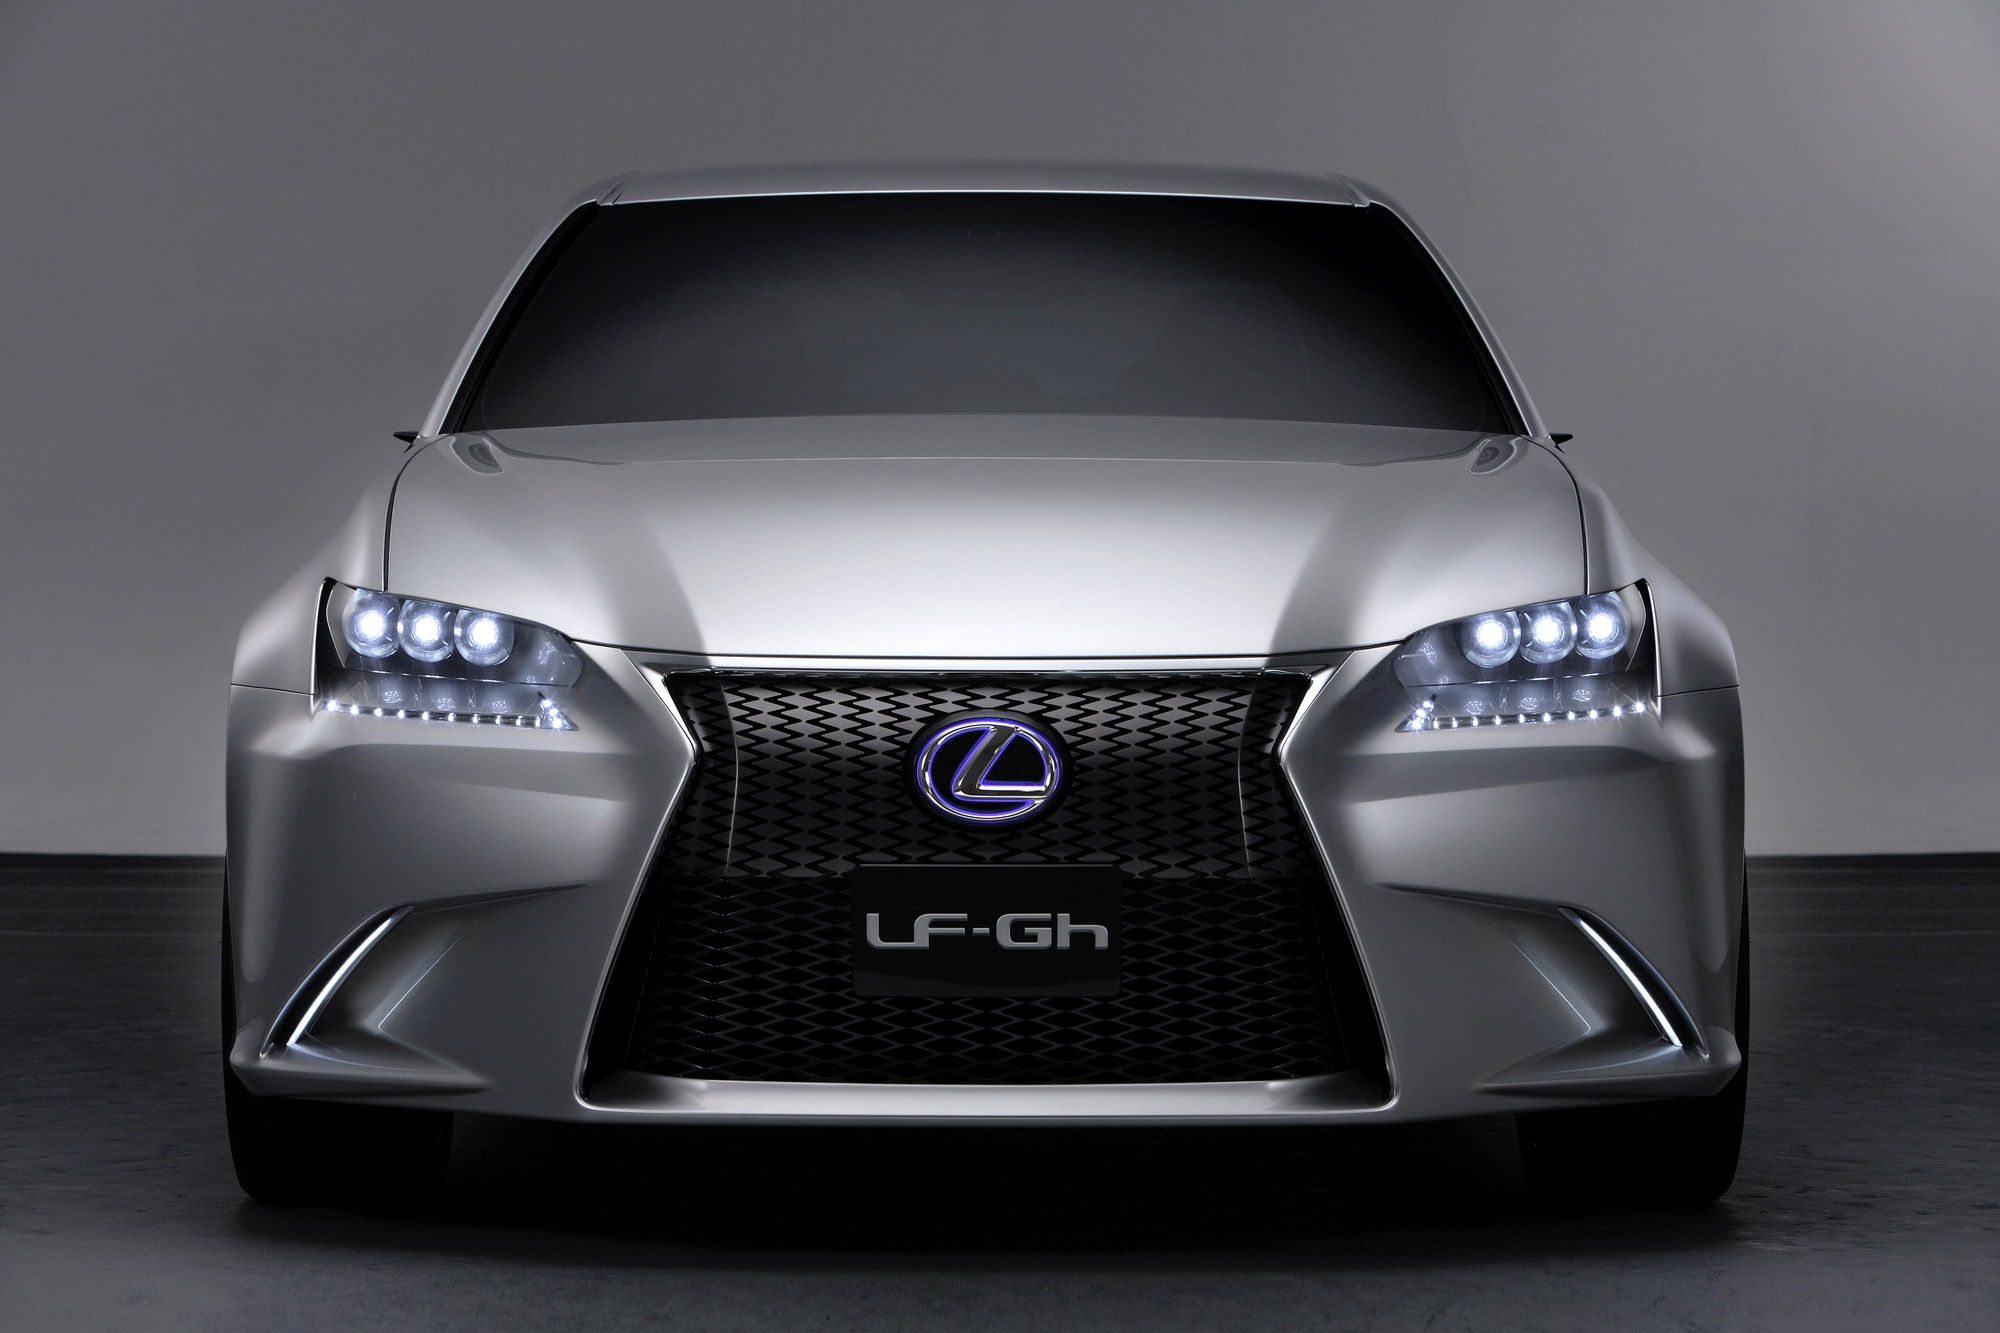 2011 Lexus LF-Gh Concept 